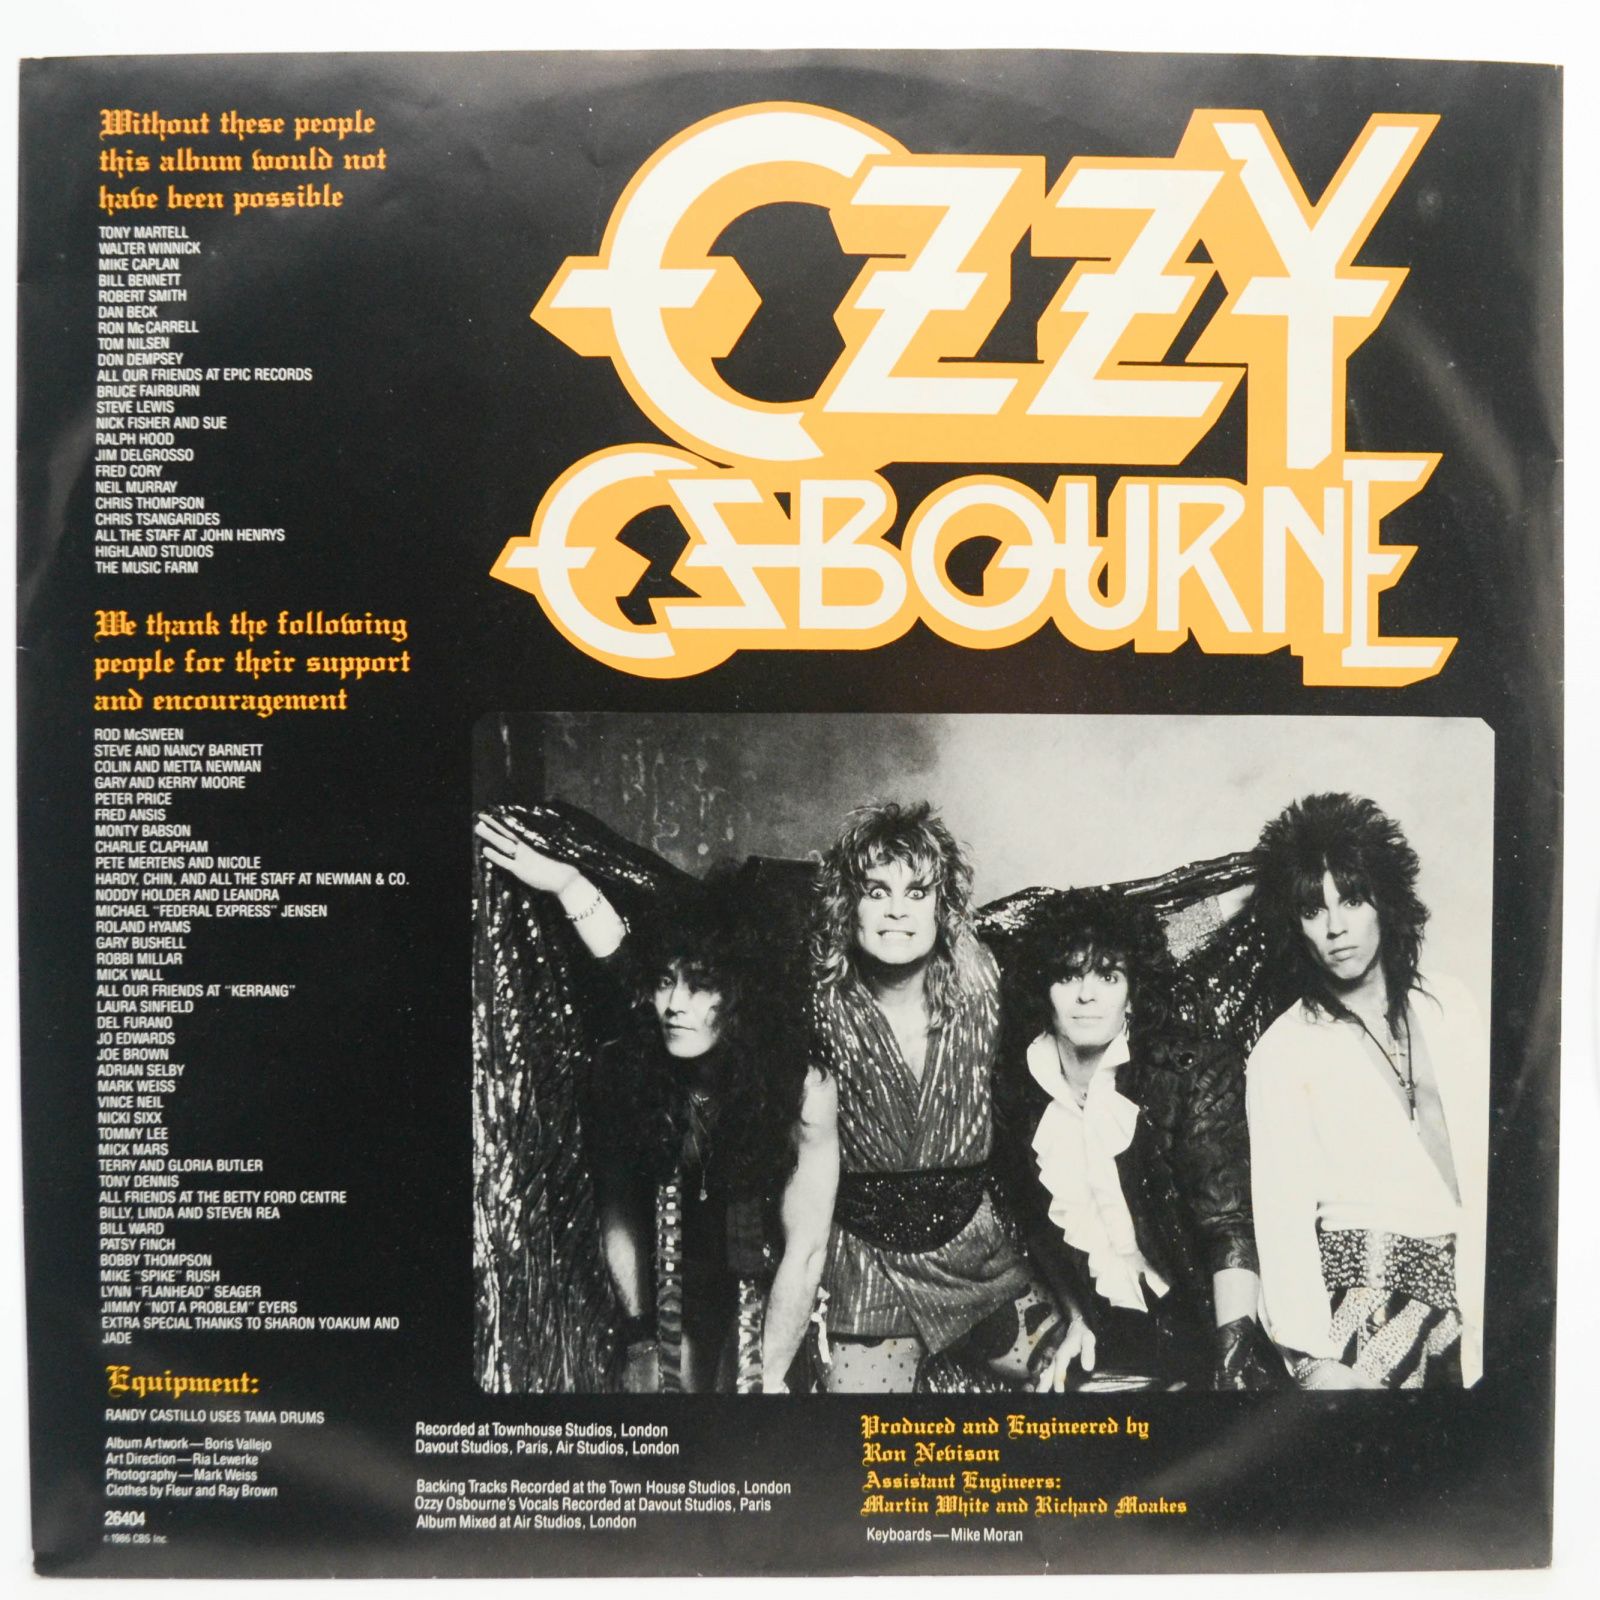 Ozzy Osbourne — The Ultimate Sin (UK), 1986